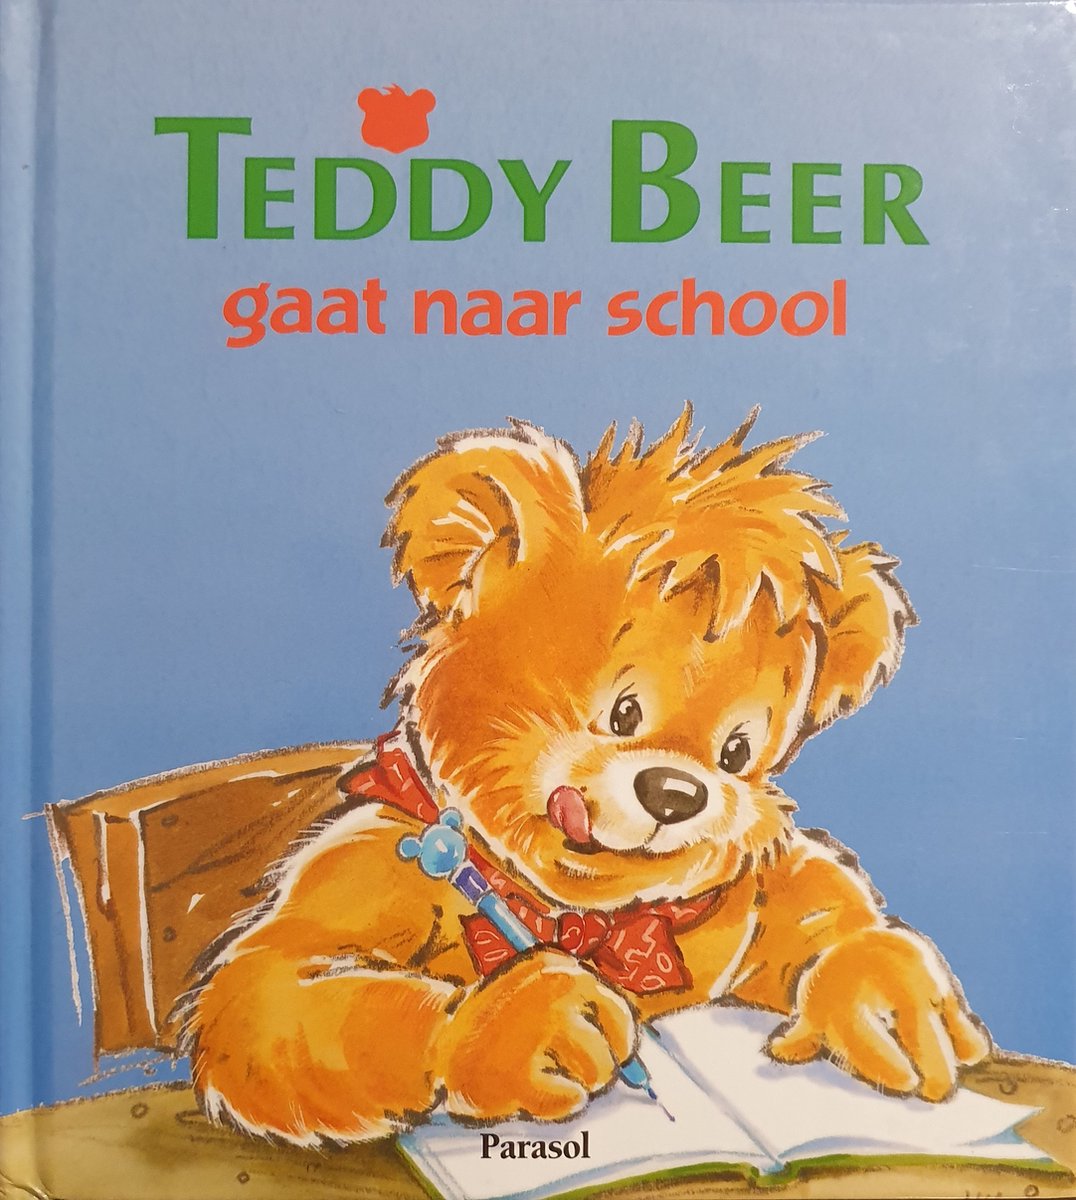 Teddy beer gaat naar school - special